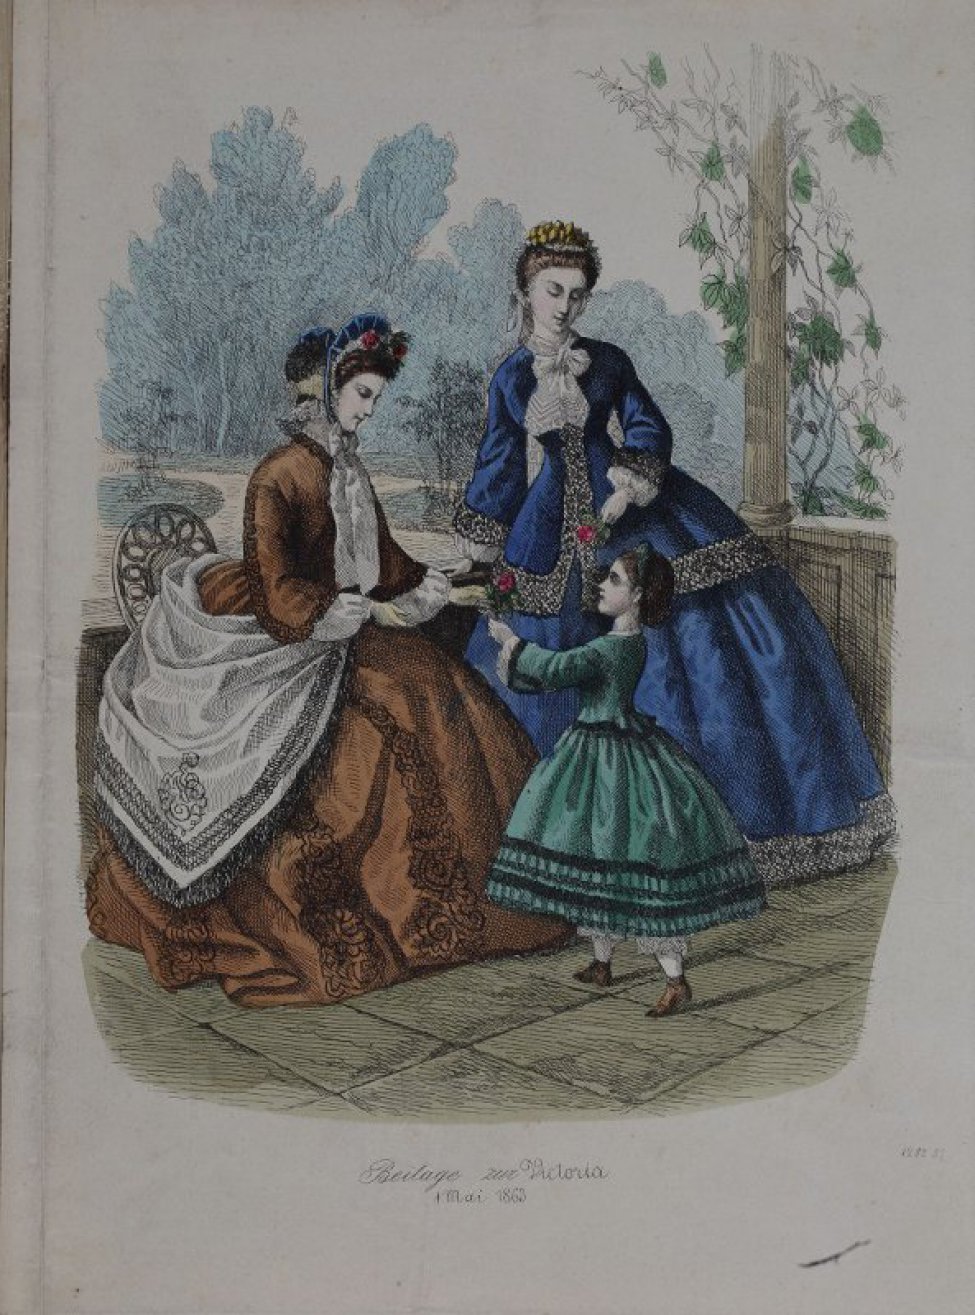 Слева изображена сидящая на стуле дама в коричневом платье и белой большой шали. К ней бежит девочка в зеленом платье с сеткой в волосах. Позади дама в синем платье.